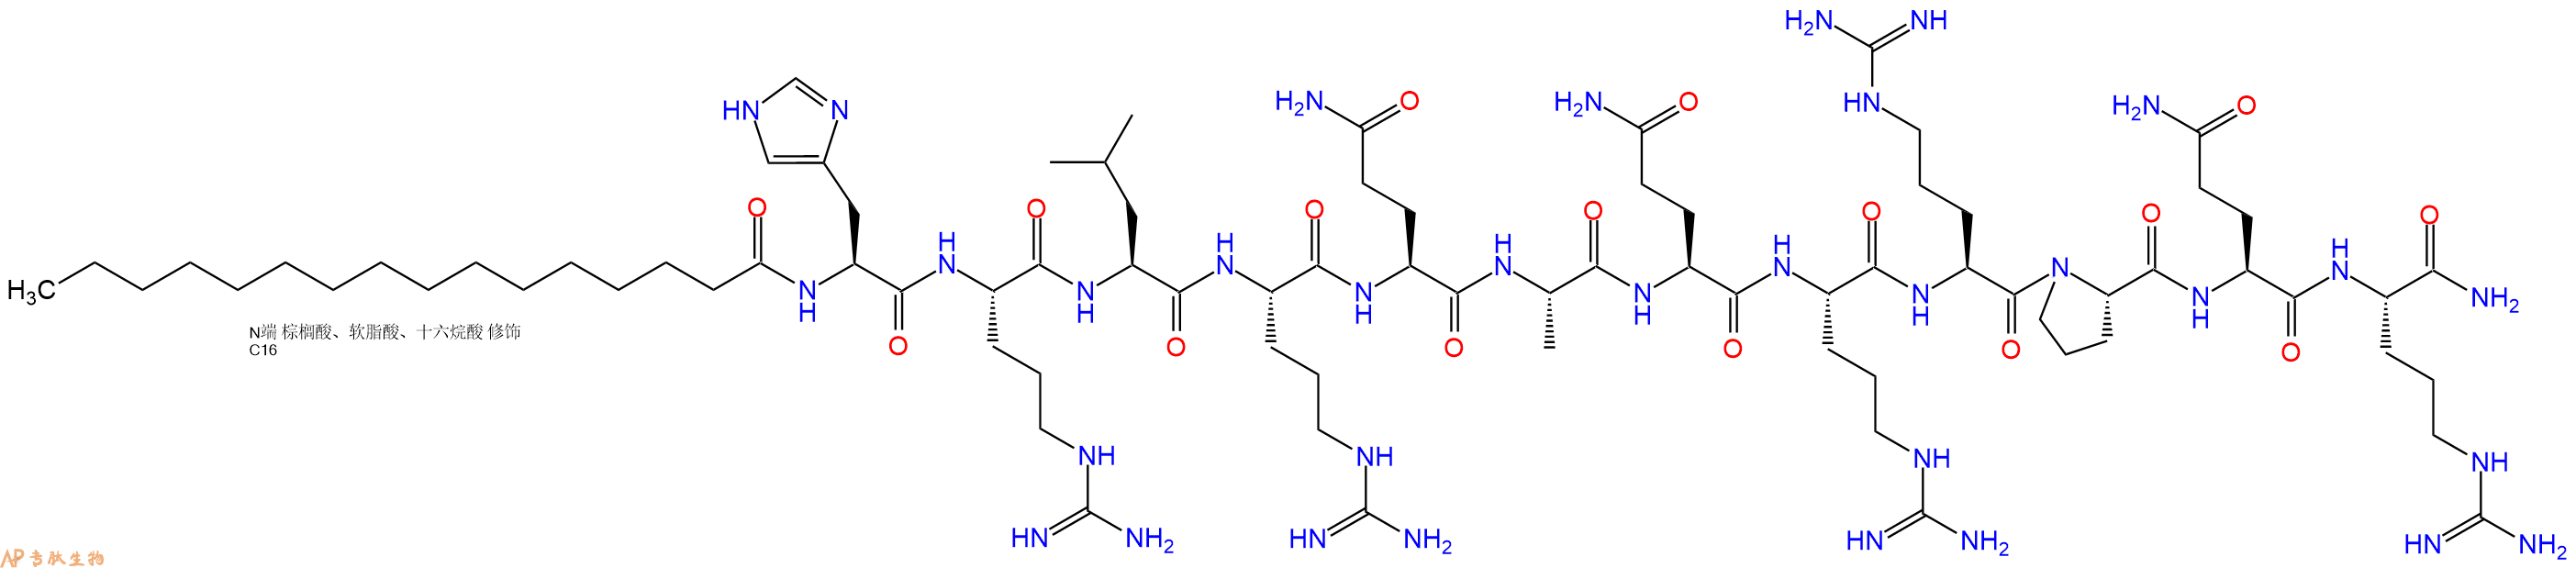 专肽生物产品PAL-His-Arg-Leu-Arg-Gln-Ala-Gln-Arg-Arg-Pro-Gln-Ar